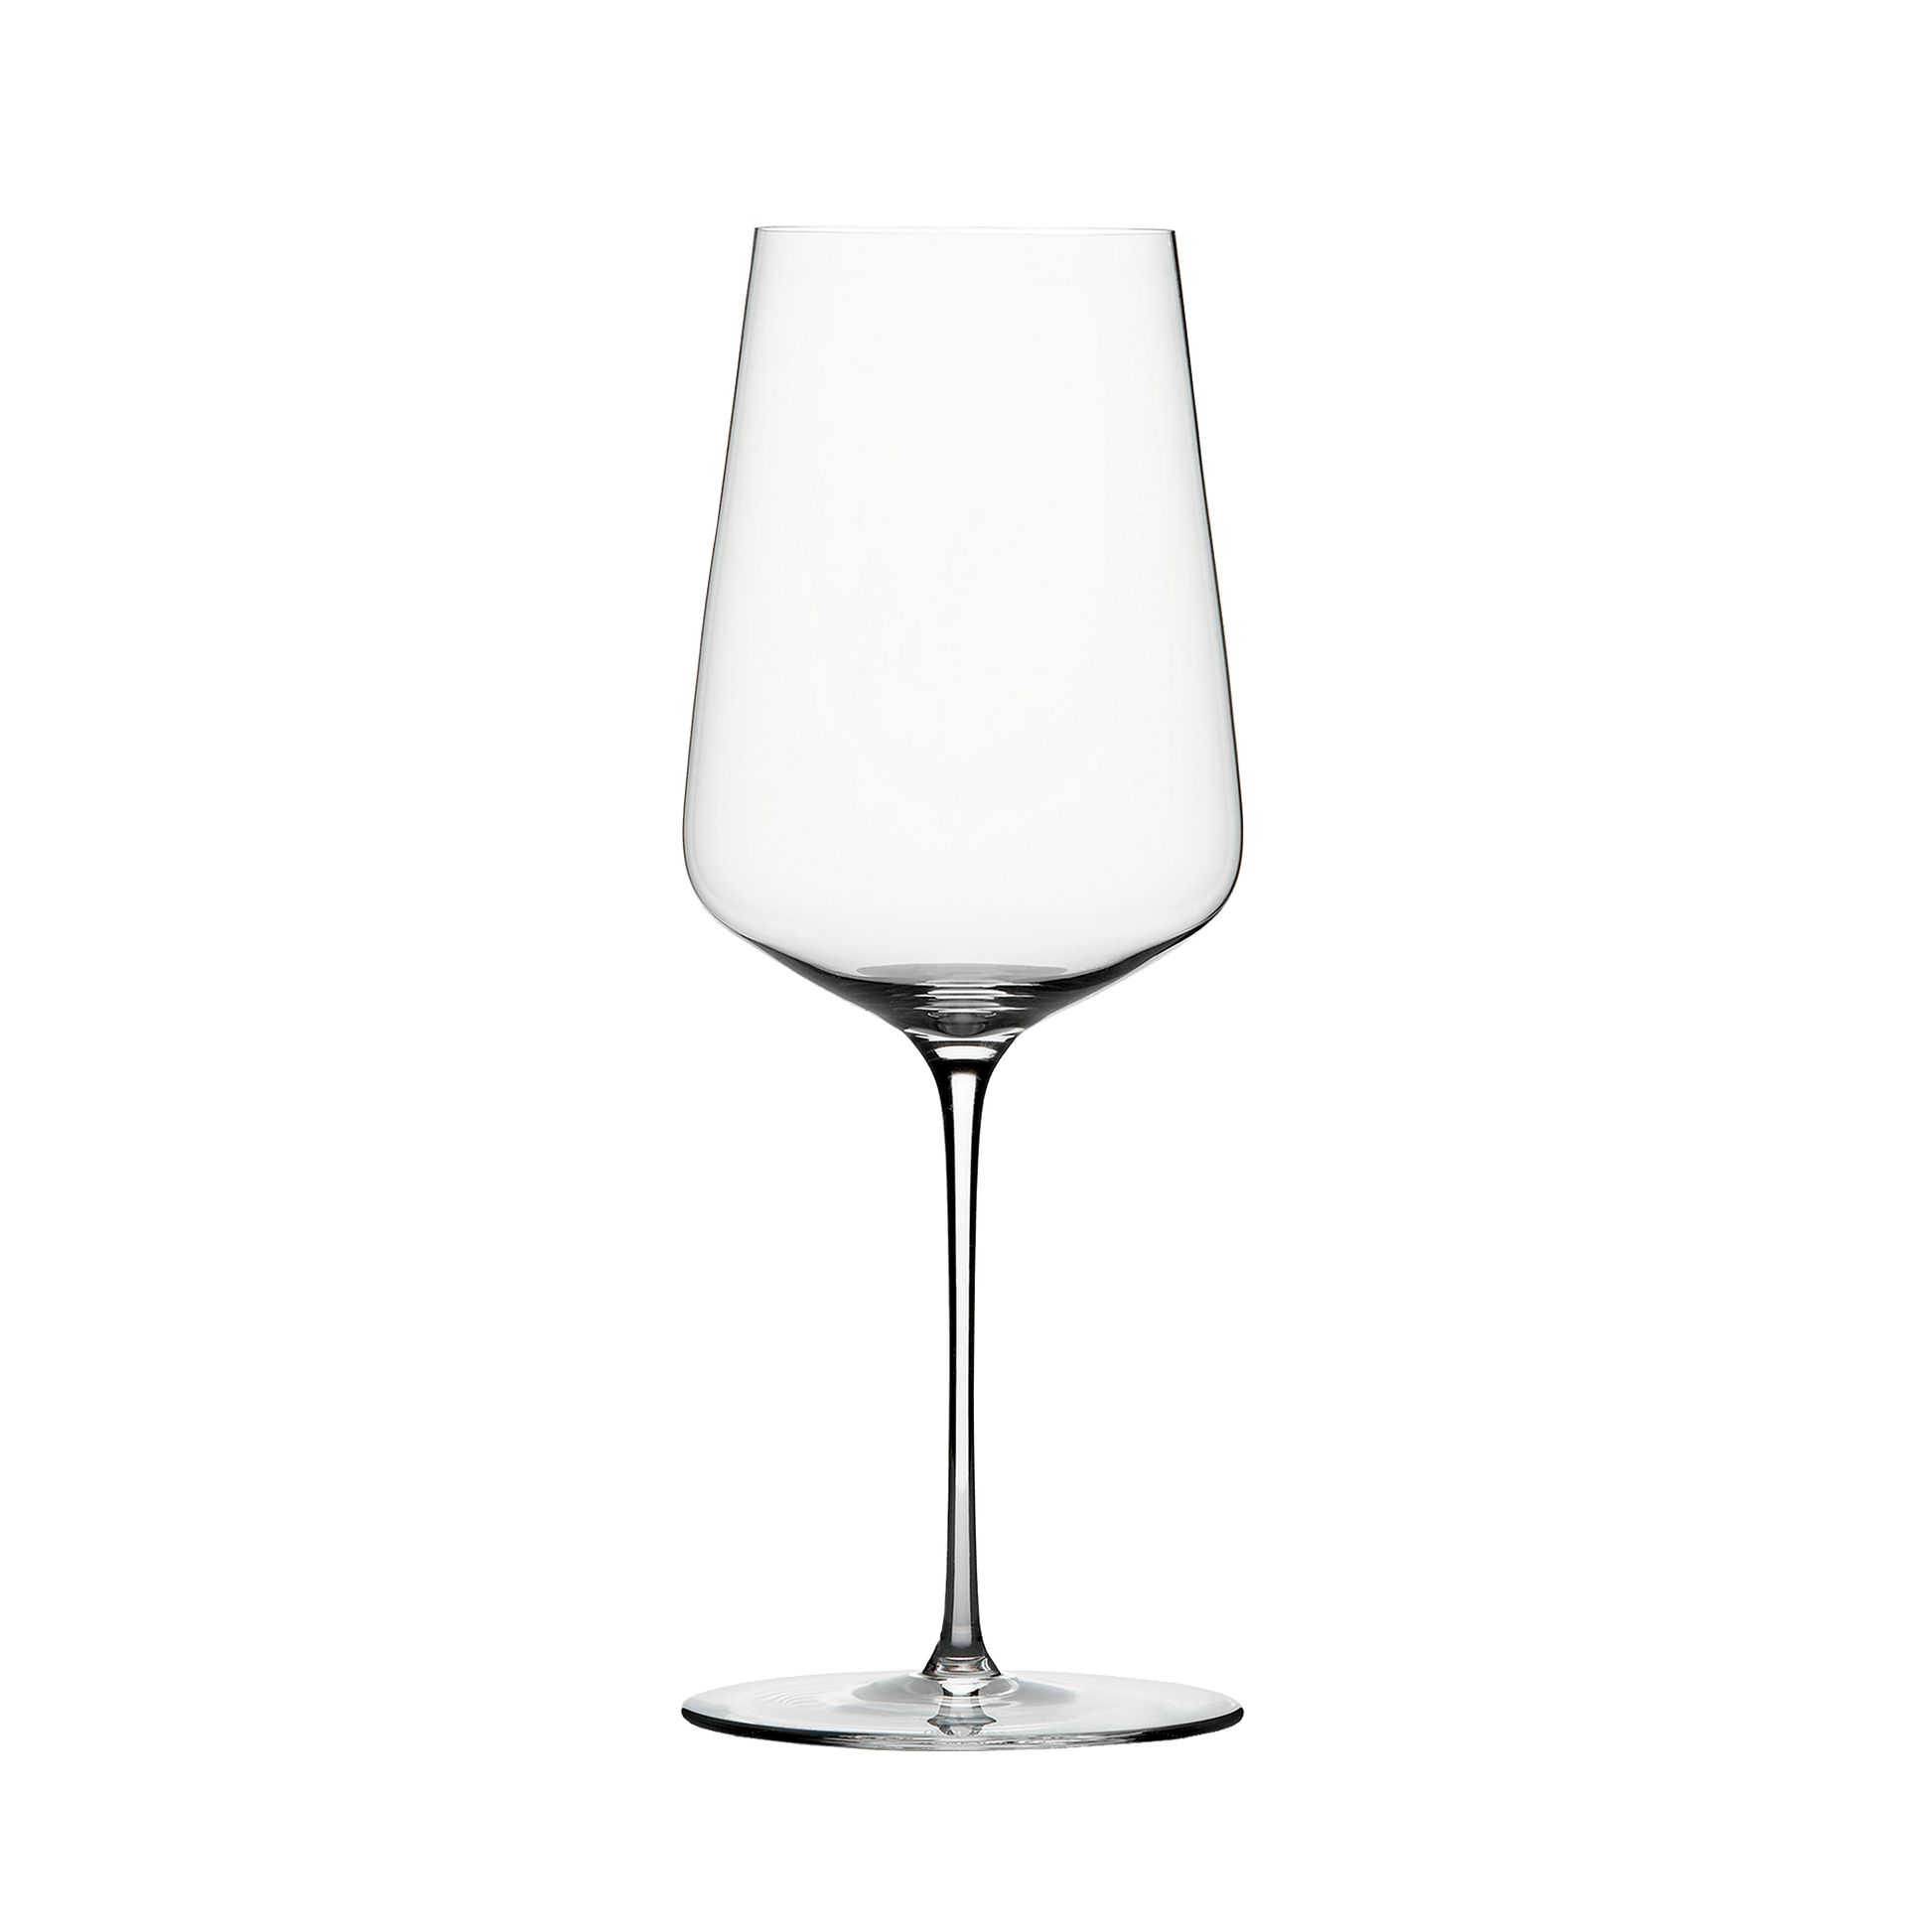 ZALTO UNIVERSAL GLASS (Pack of 1) - TwoMoreGlasses.com